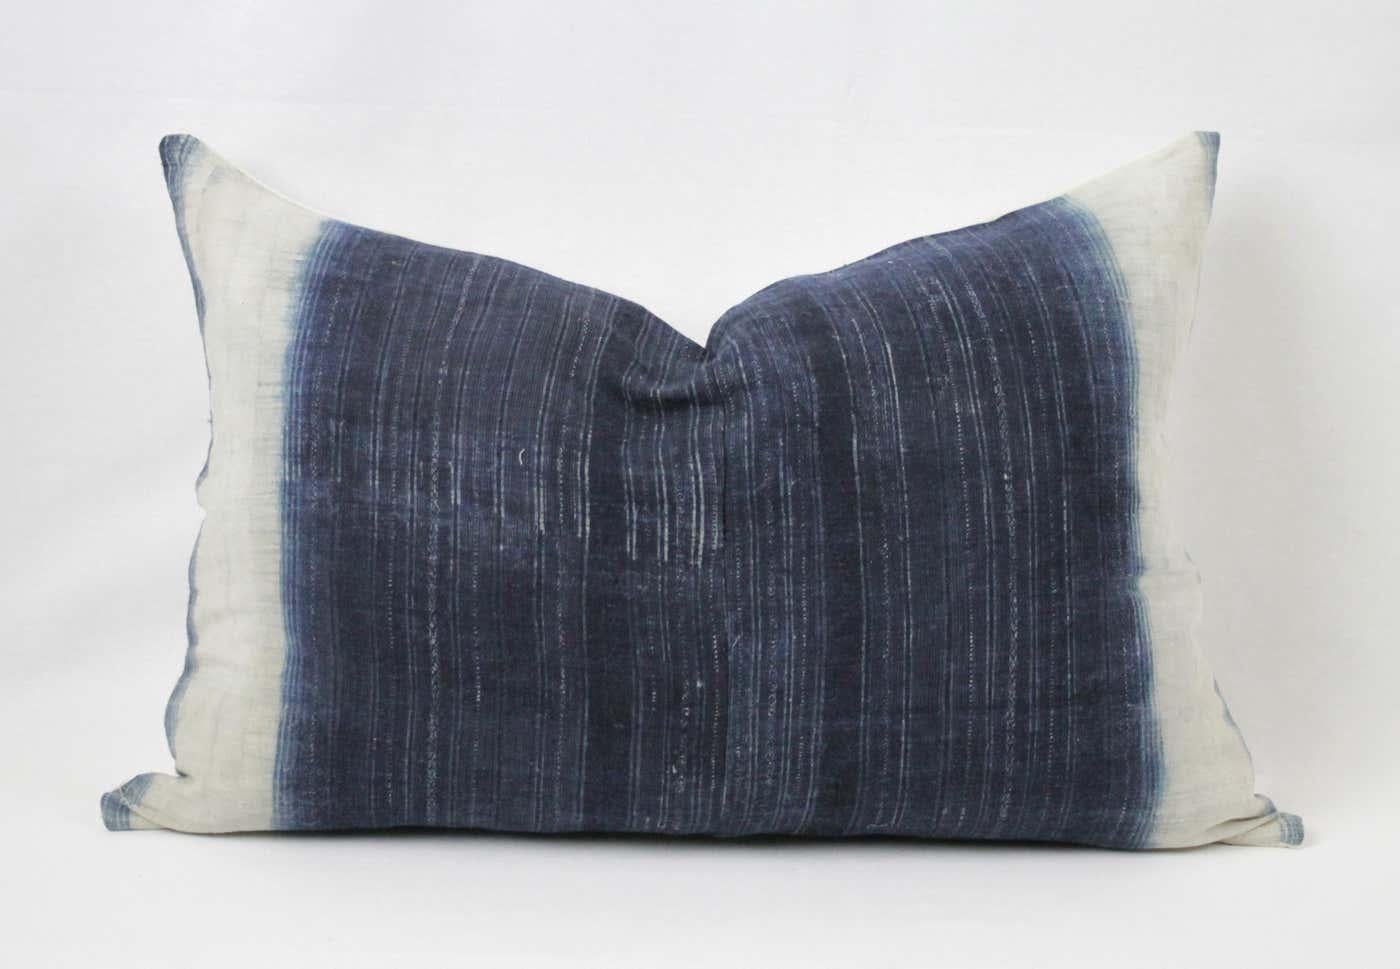 Vintage vertikale indigoblaue und weiße Batik-Stil Kissen, mit Reißverschluss geschlossen. Die Rückseite ist aus natürlichem, antikem französischen Leinen. Pillow ist in der Mitte am dunkelsten und verblasst dann zu einem Off-White. Die Hauptfarben